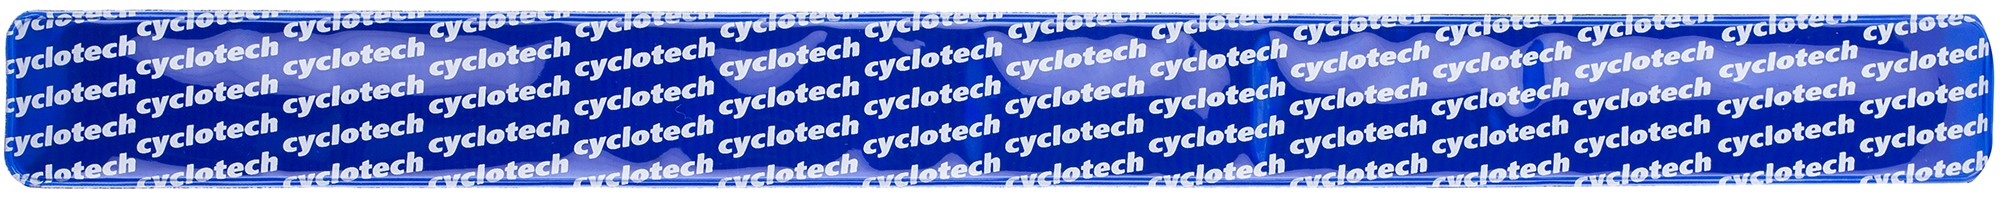 Браслет світловідбиваючий Cyclotech